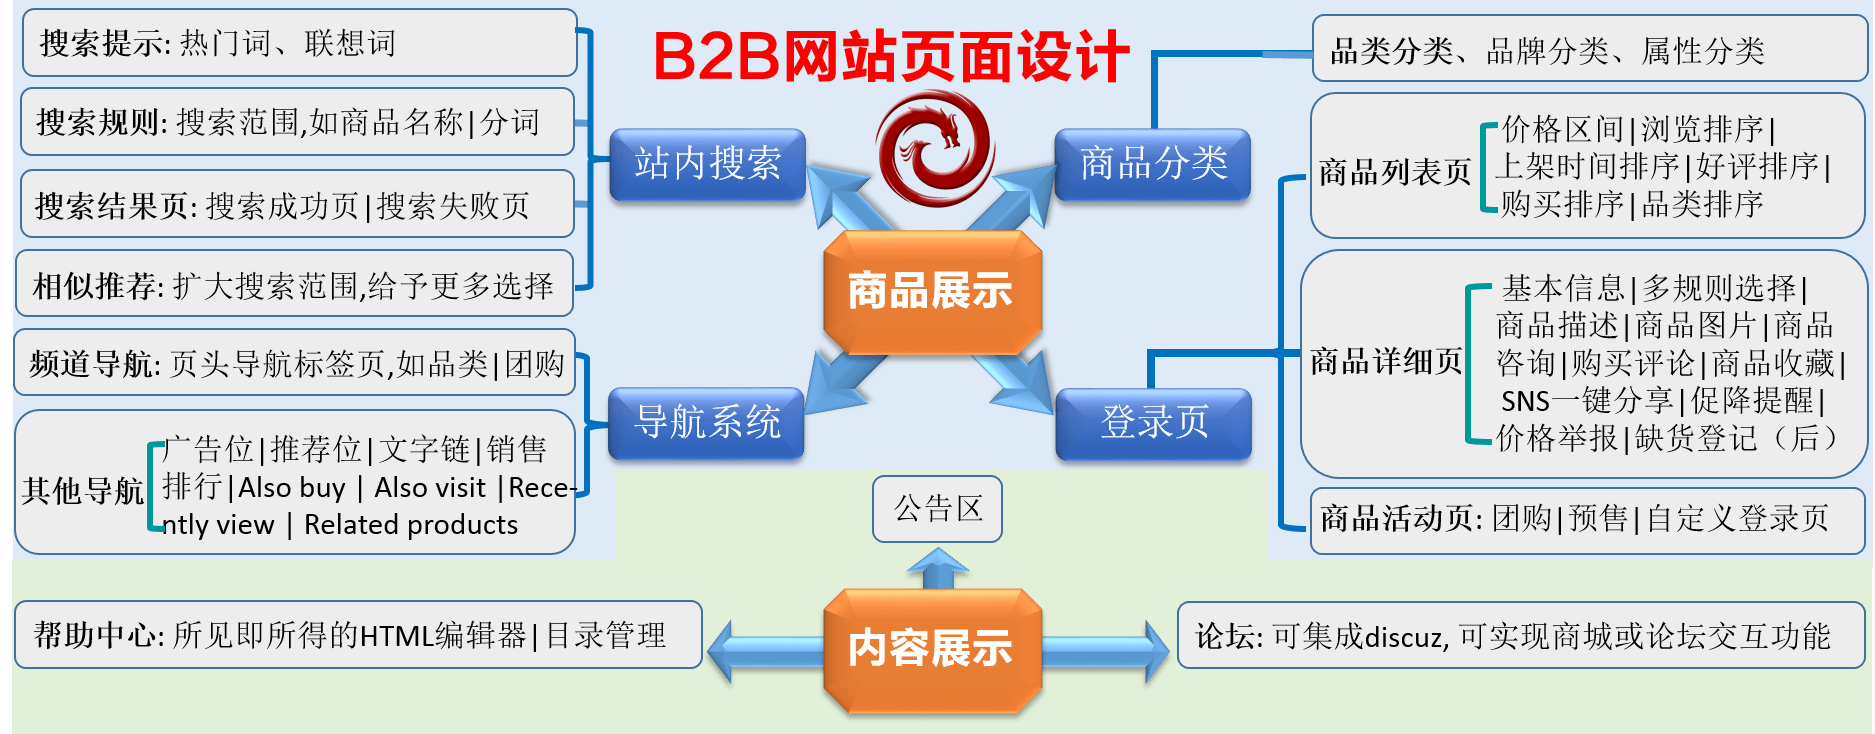 B2B网站营销流程图